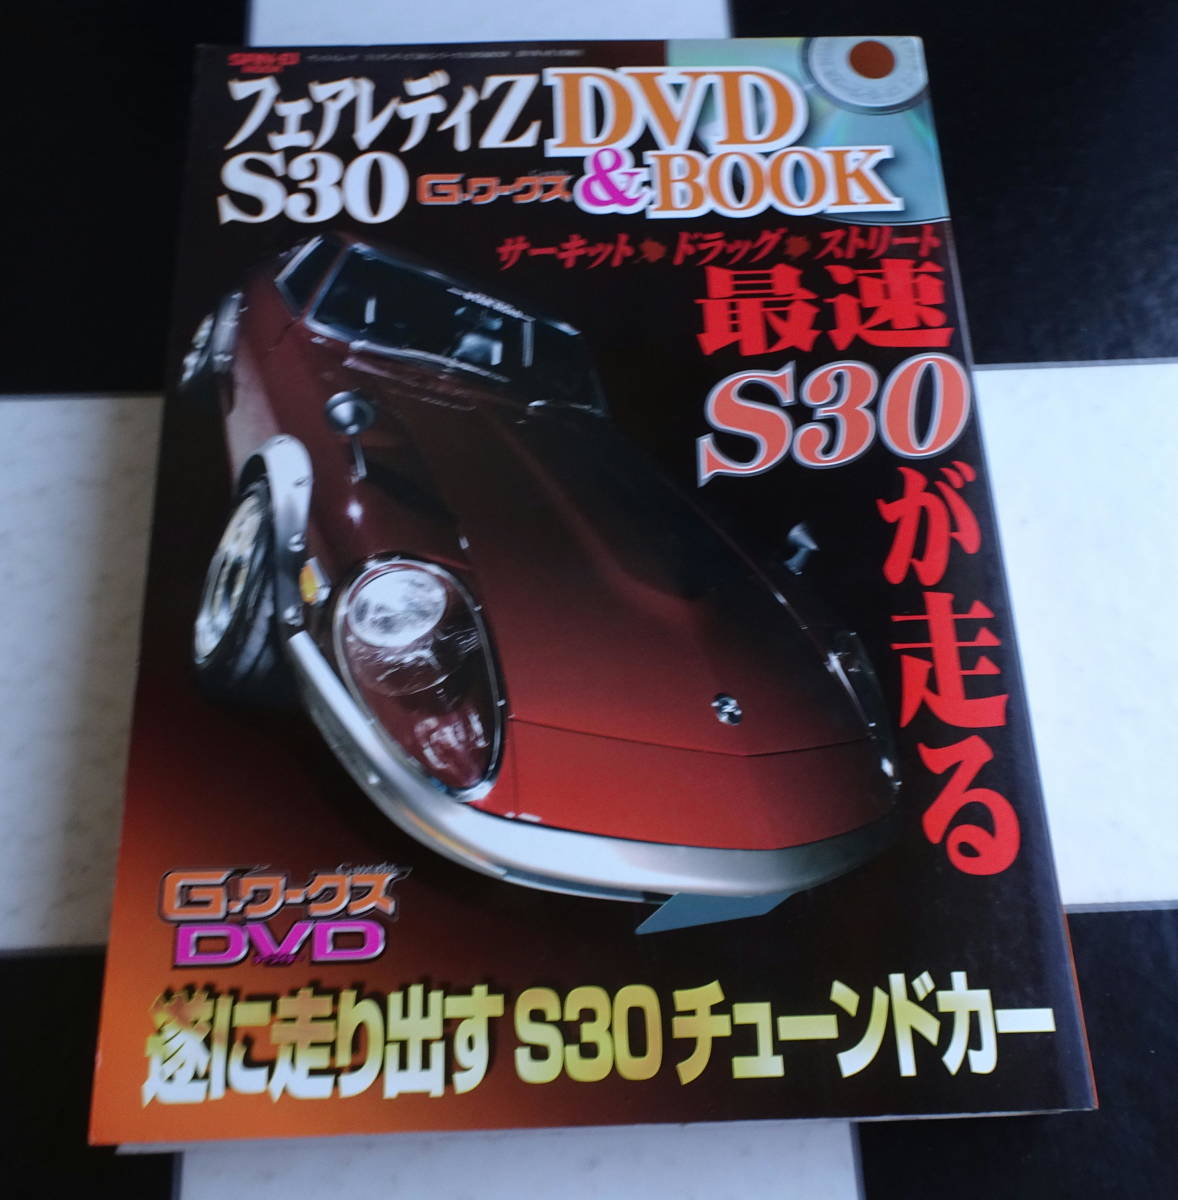 フェアレディＺ S30 Ｇ-ワークス DVD&BOOK(SAN-EI MOOK) あのマシンの排気音が！S30の走る姿がここに！